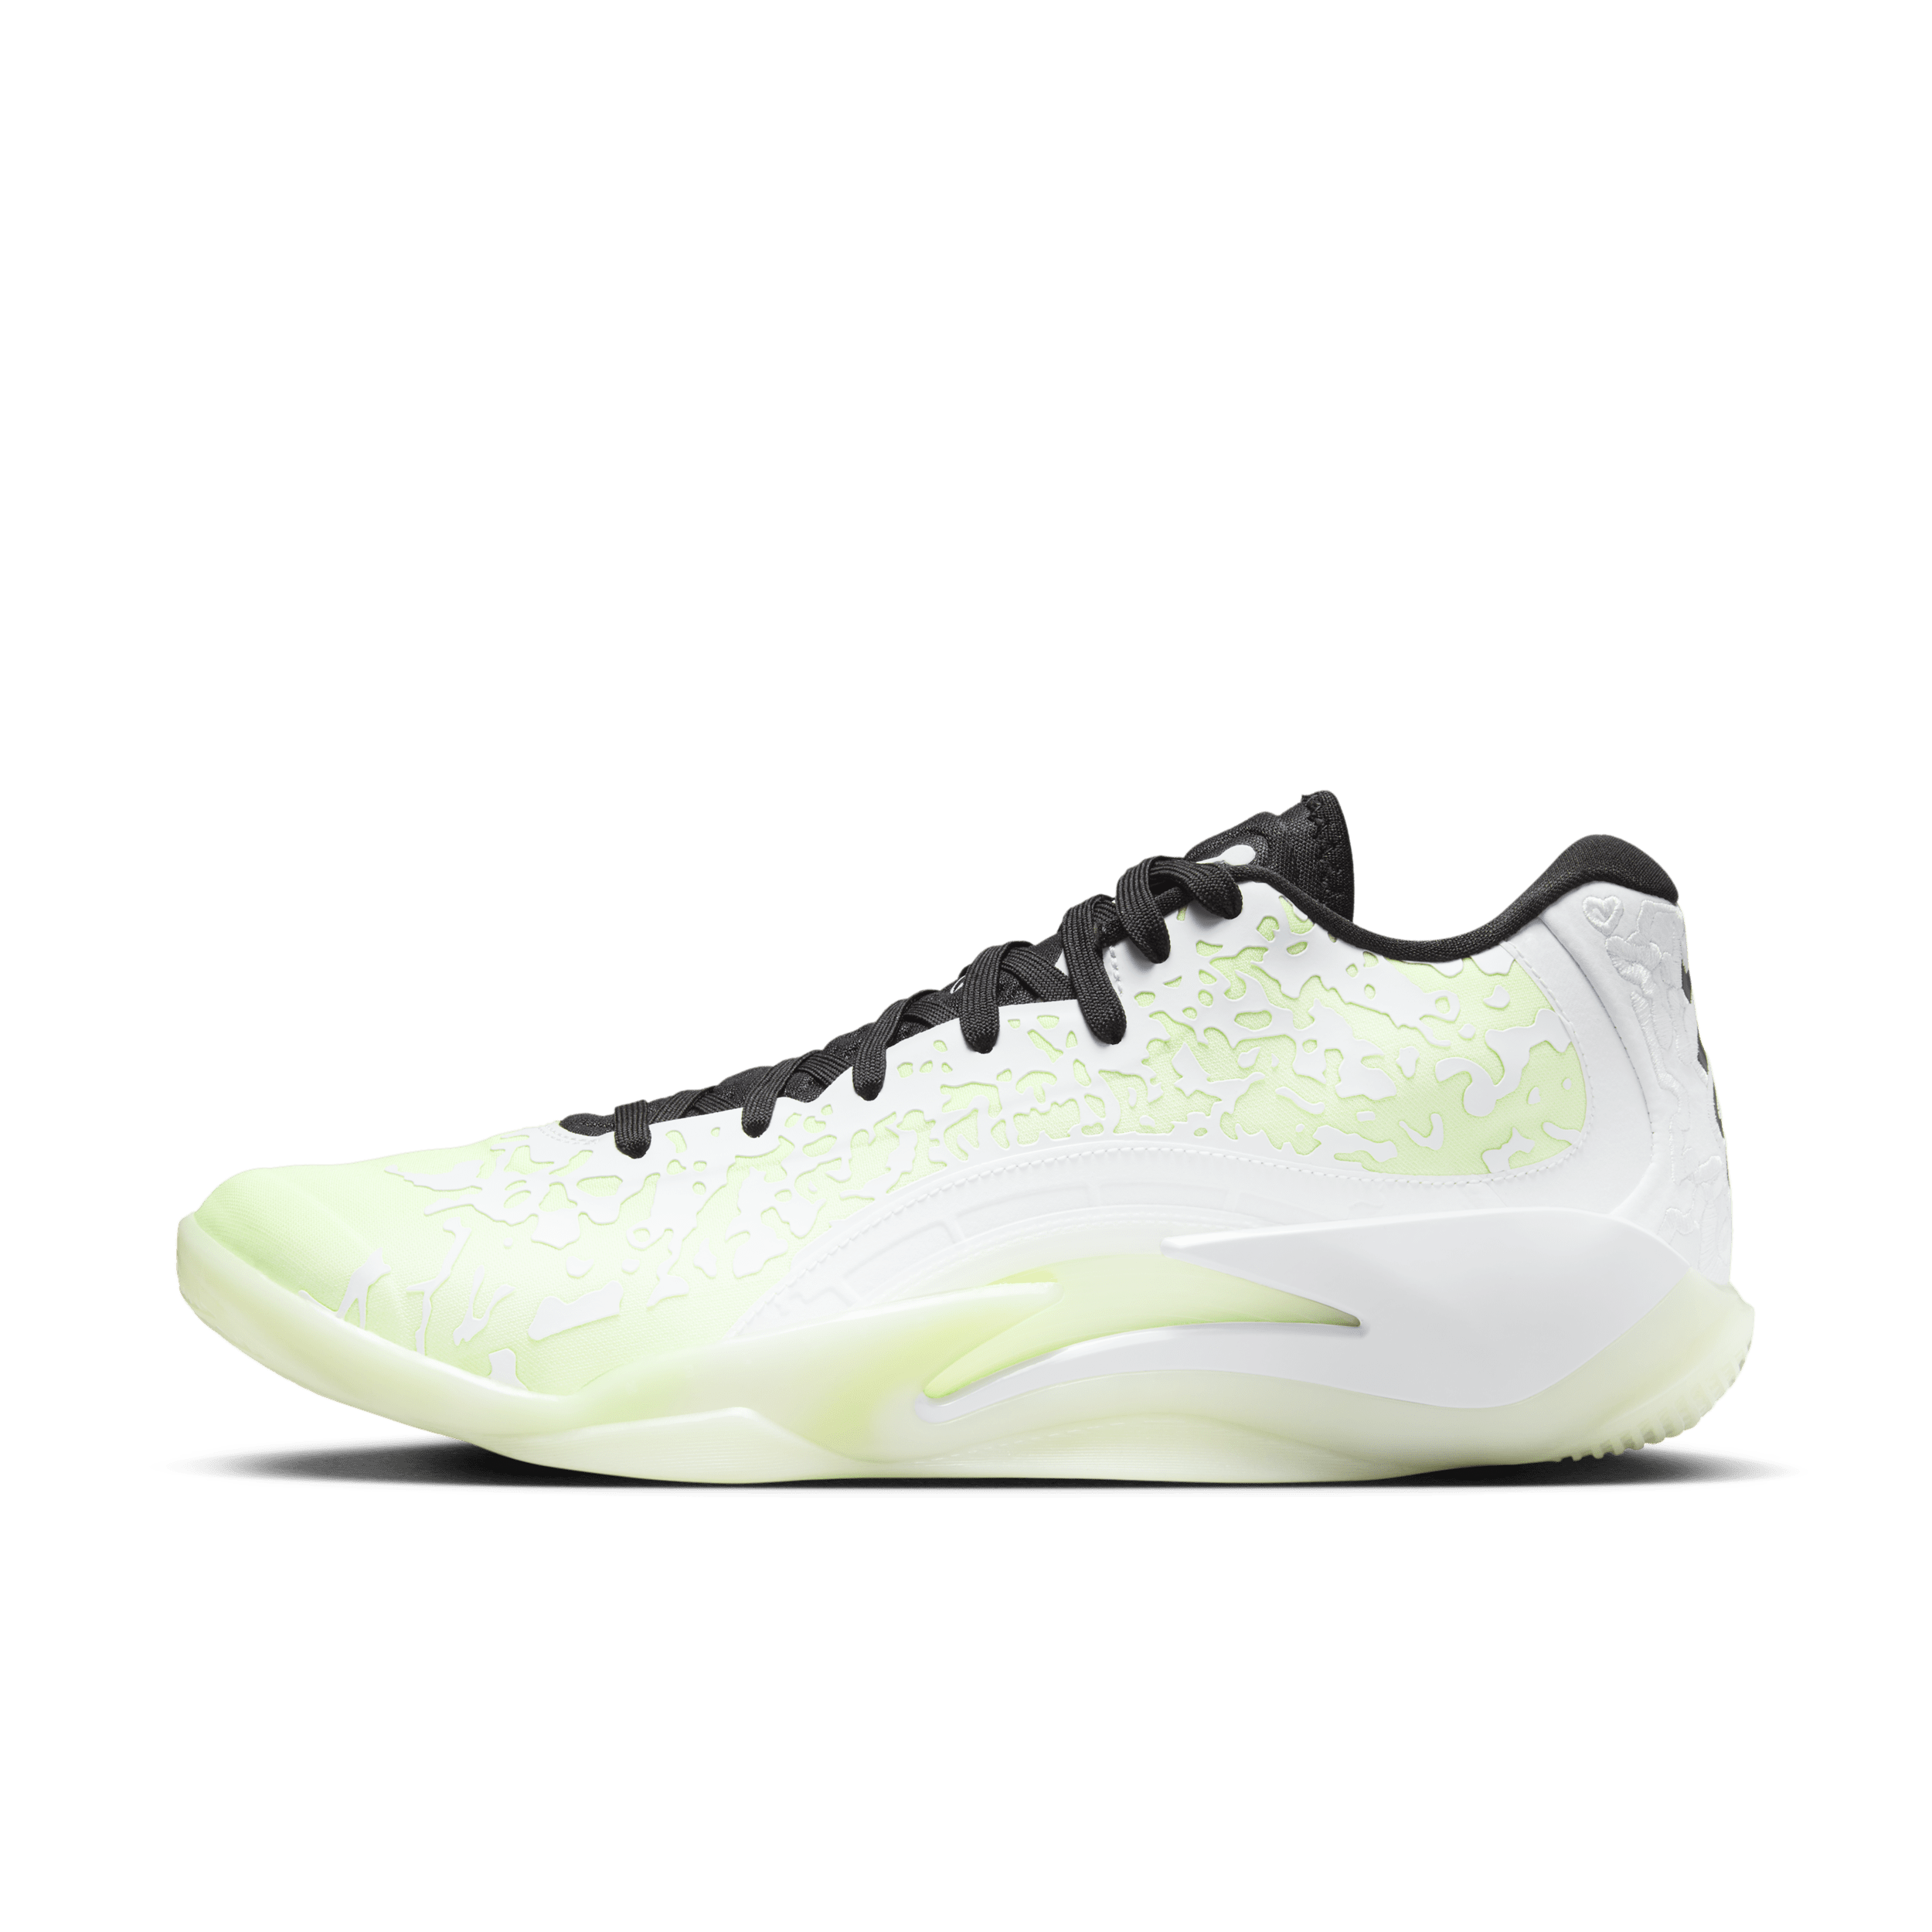 Nike Zion 3 basketbalschoenen - Wit